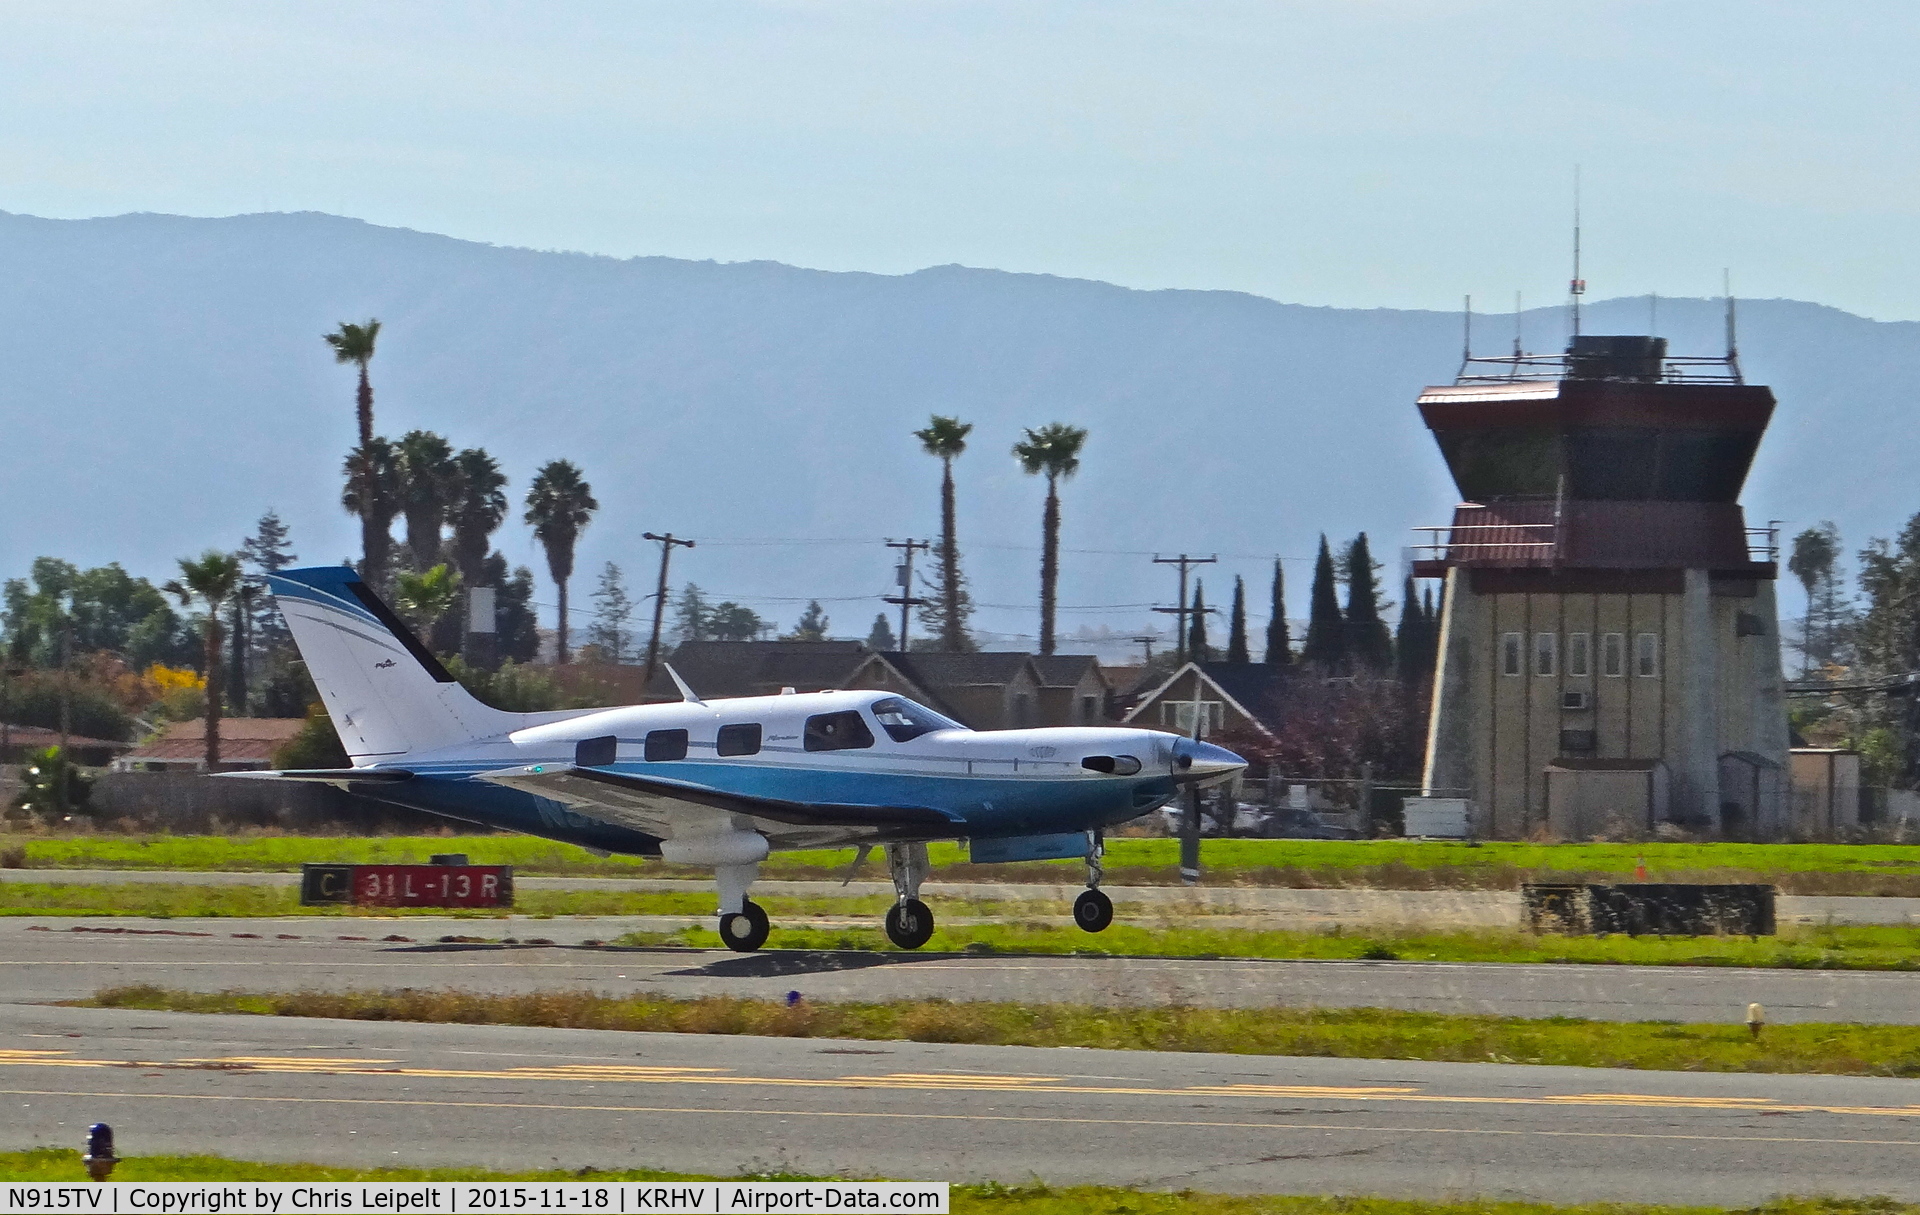 N915TV, 2010 Piper PA-46-500TP Meridan C/N 4697443, Locally-based Piper Meridian departing runway 31R at Reid Hillview Airport, San Jose, CA.